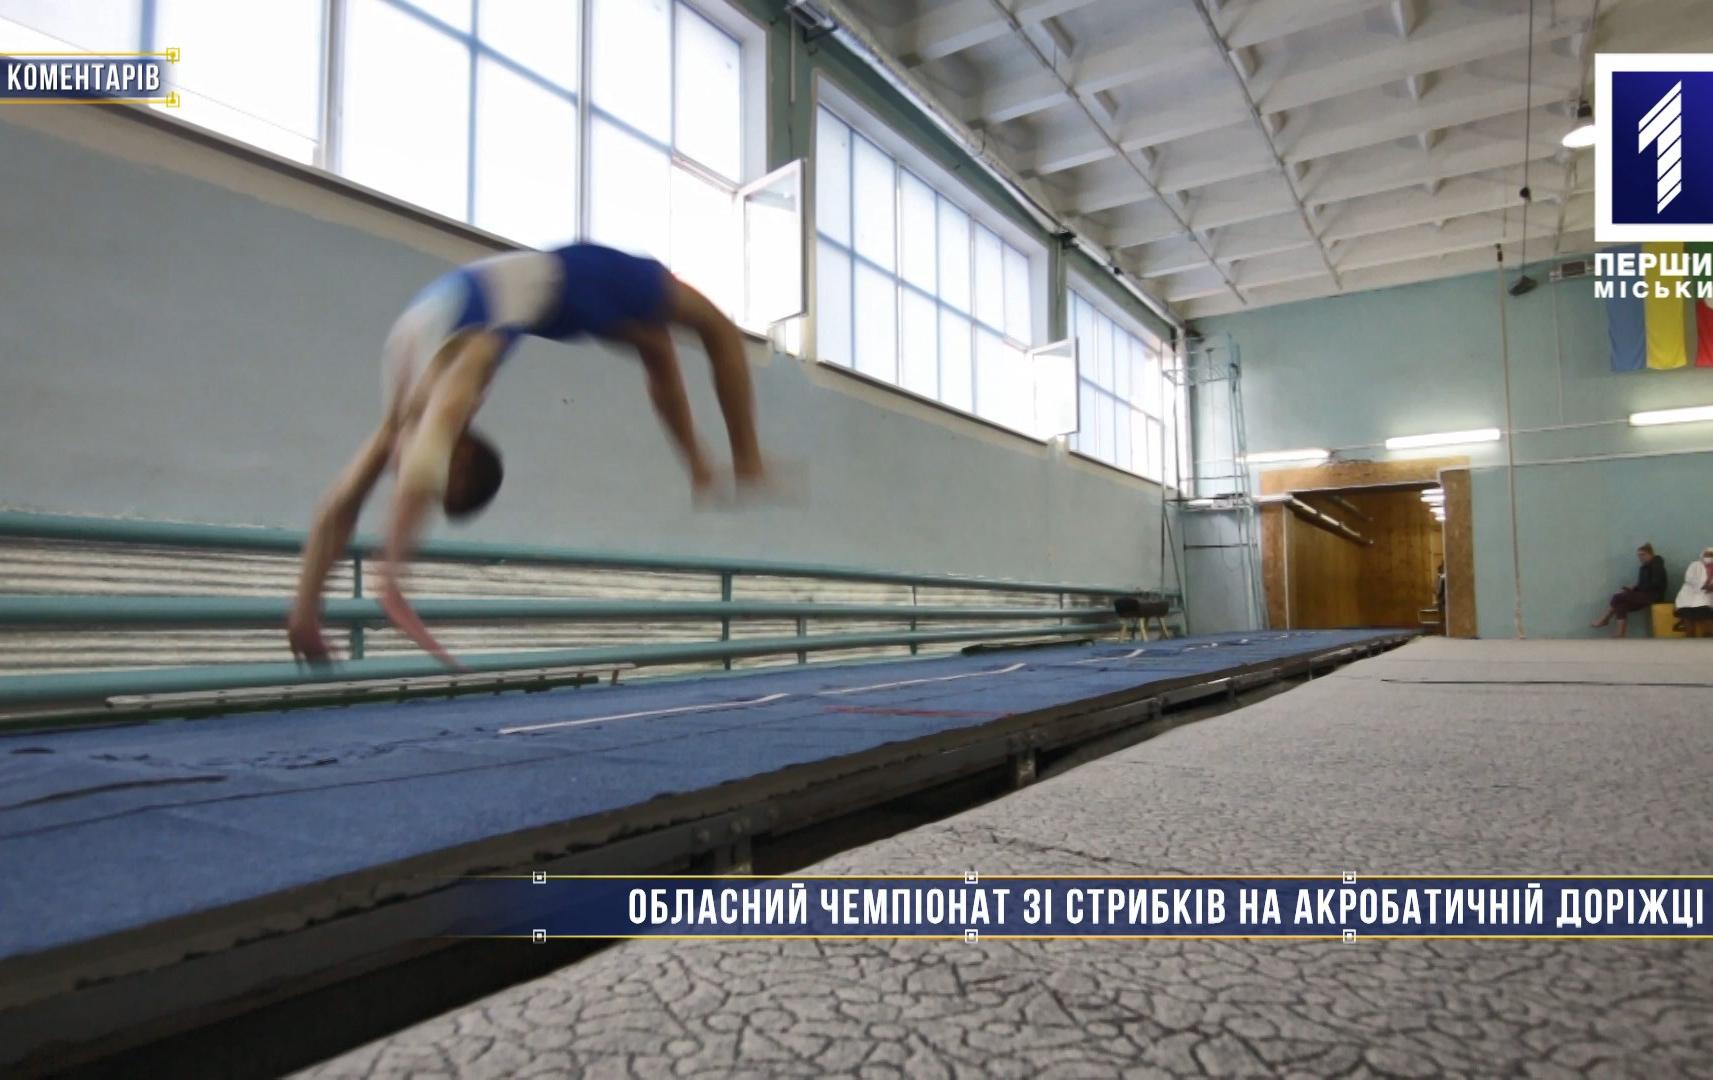 Без коментарів: обласний чемпіонат зі стрибків на акробатичній доріжці